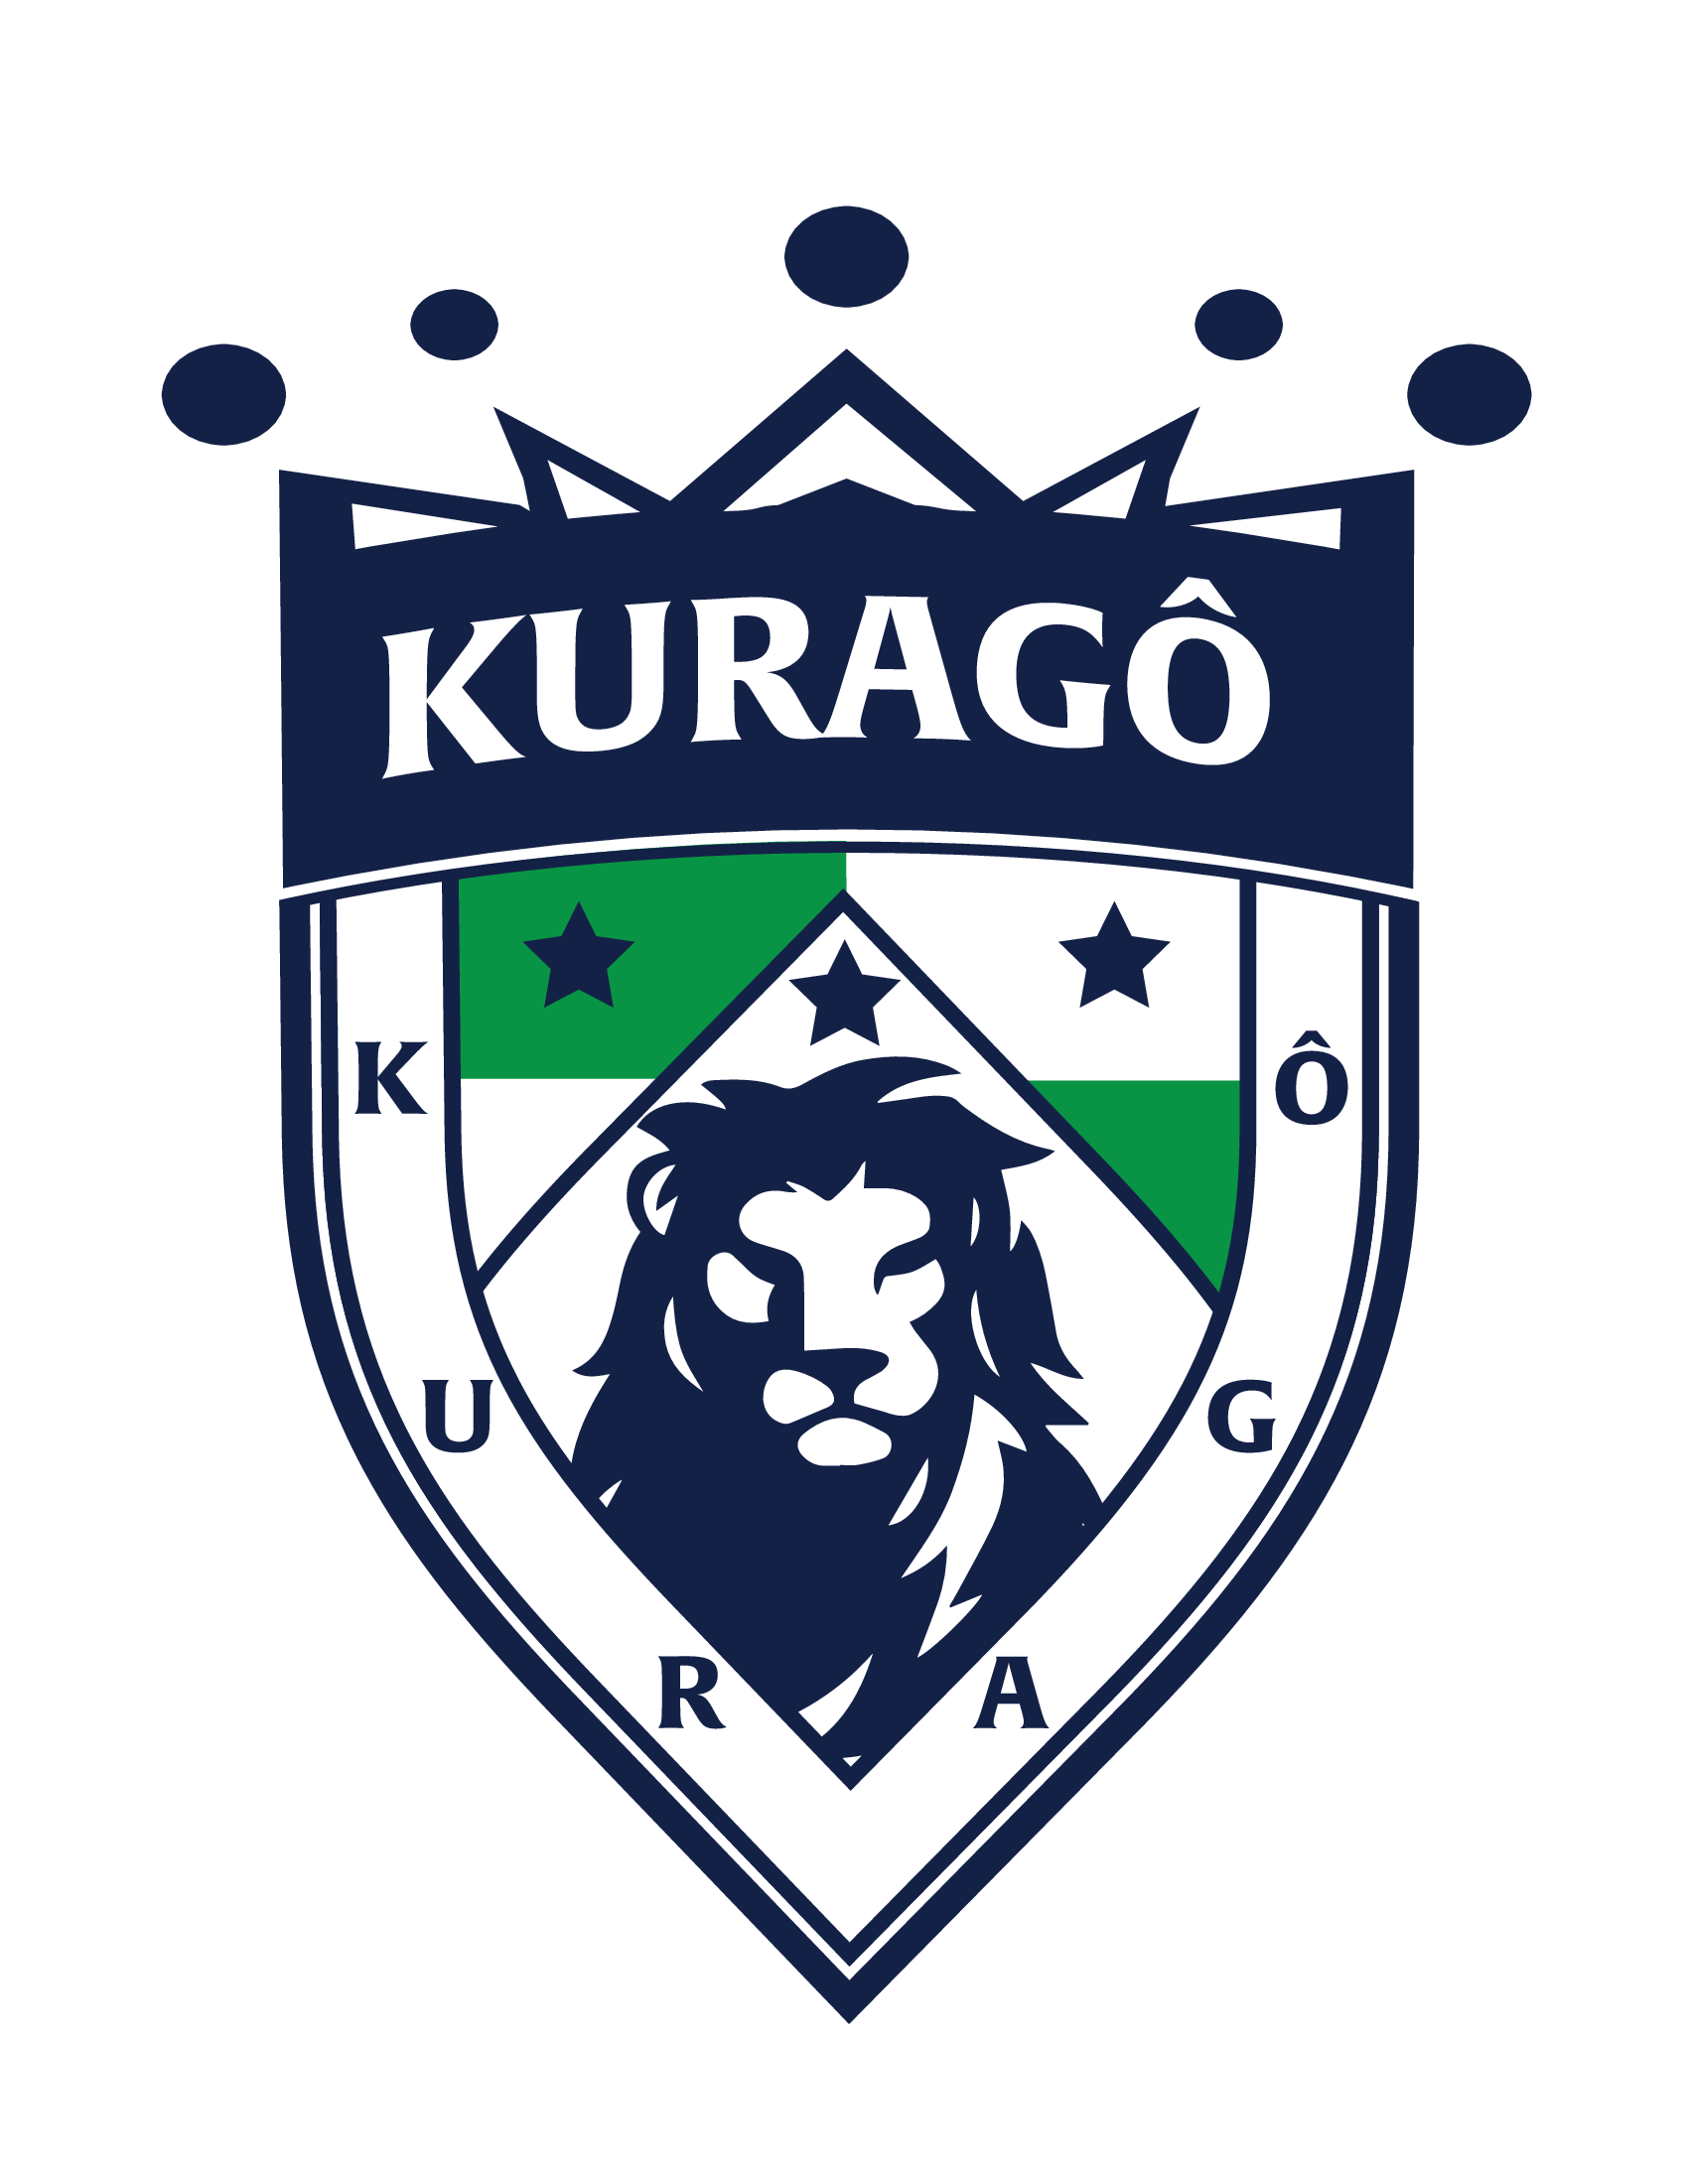 Kurago